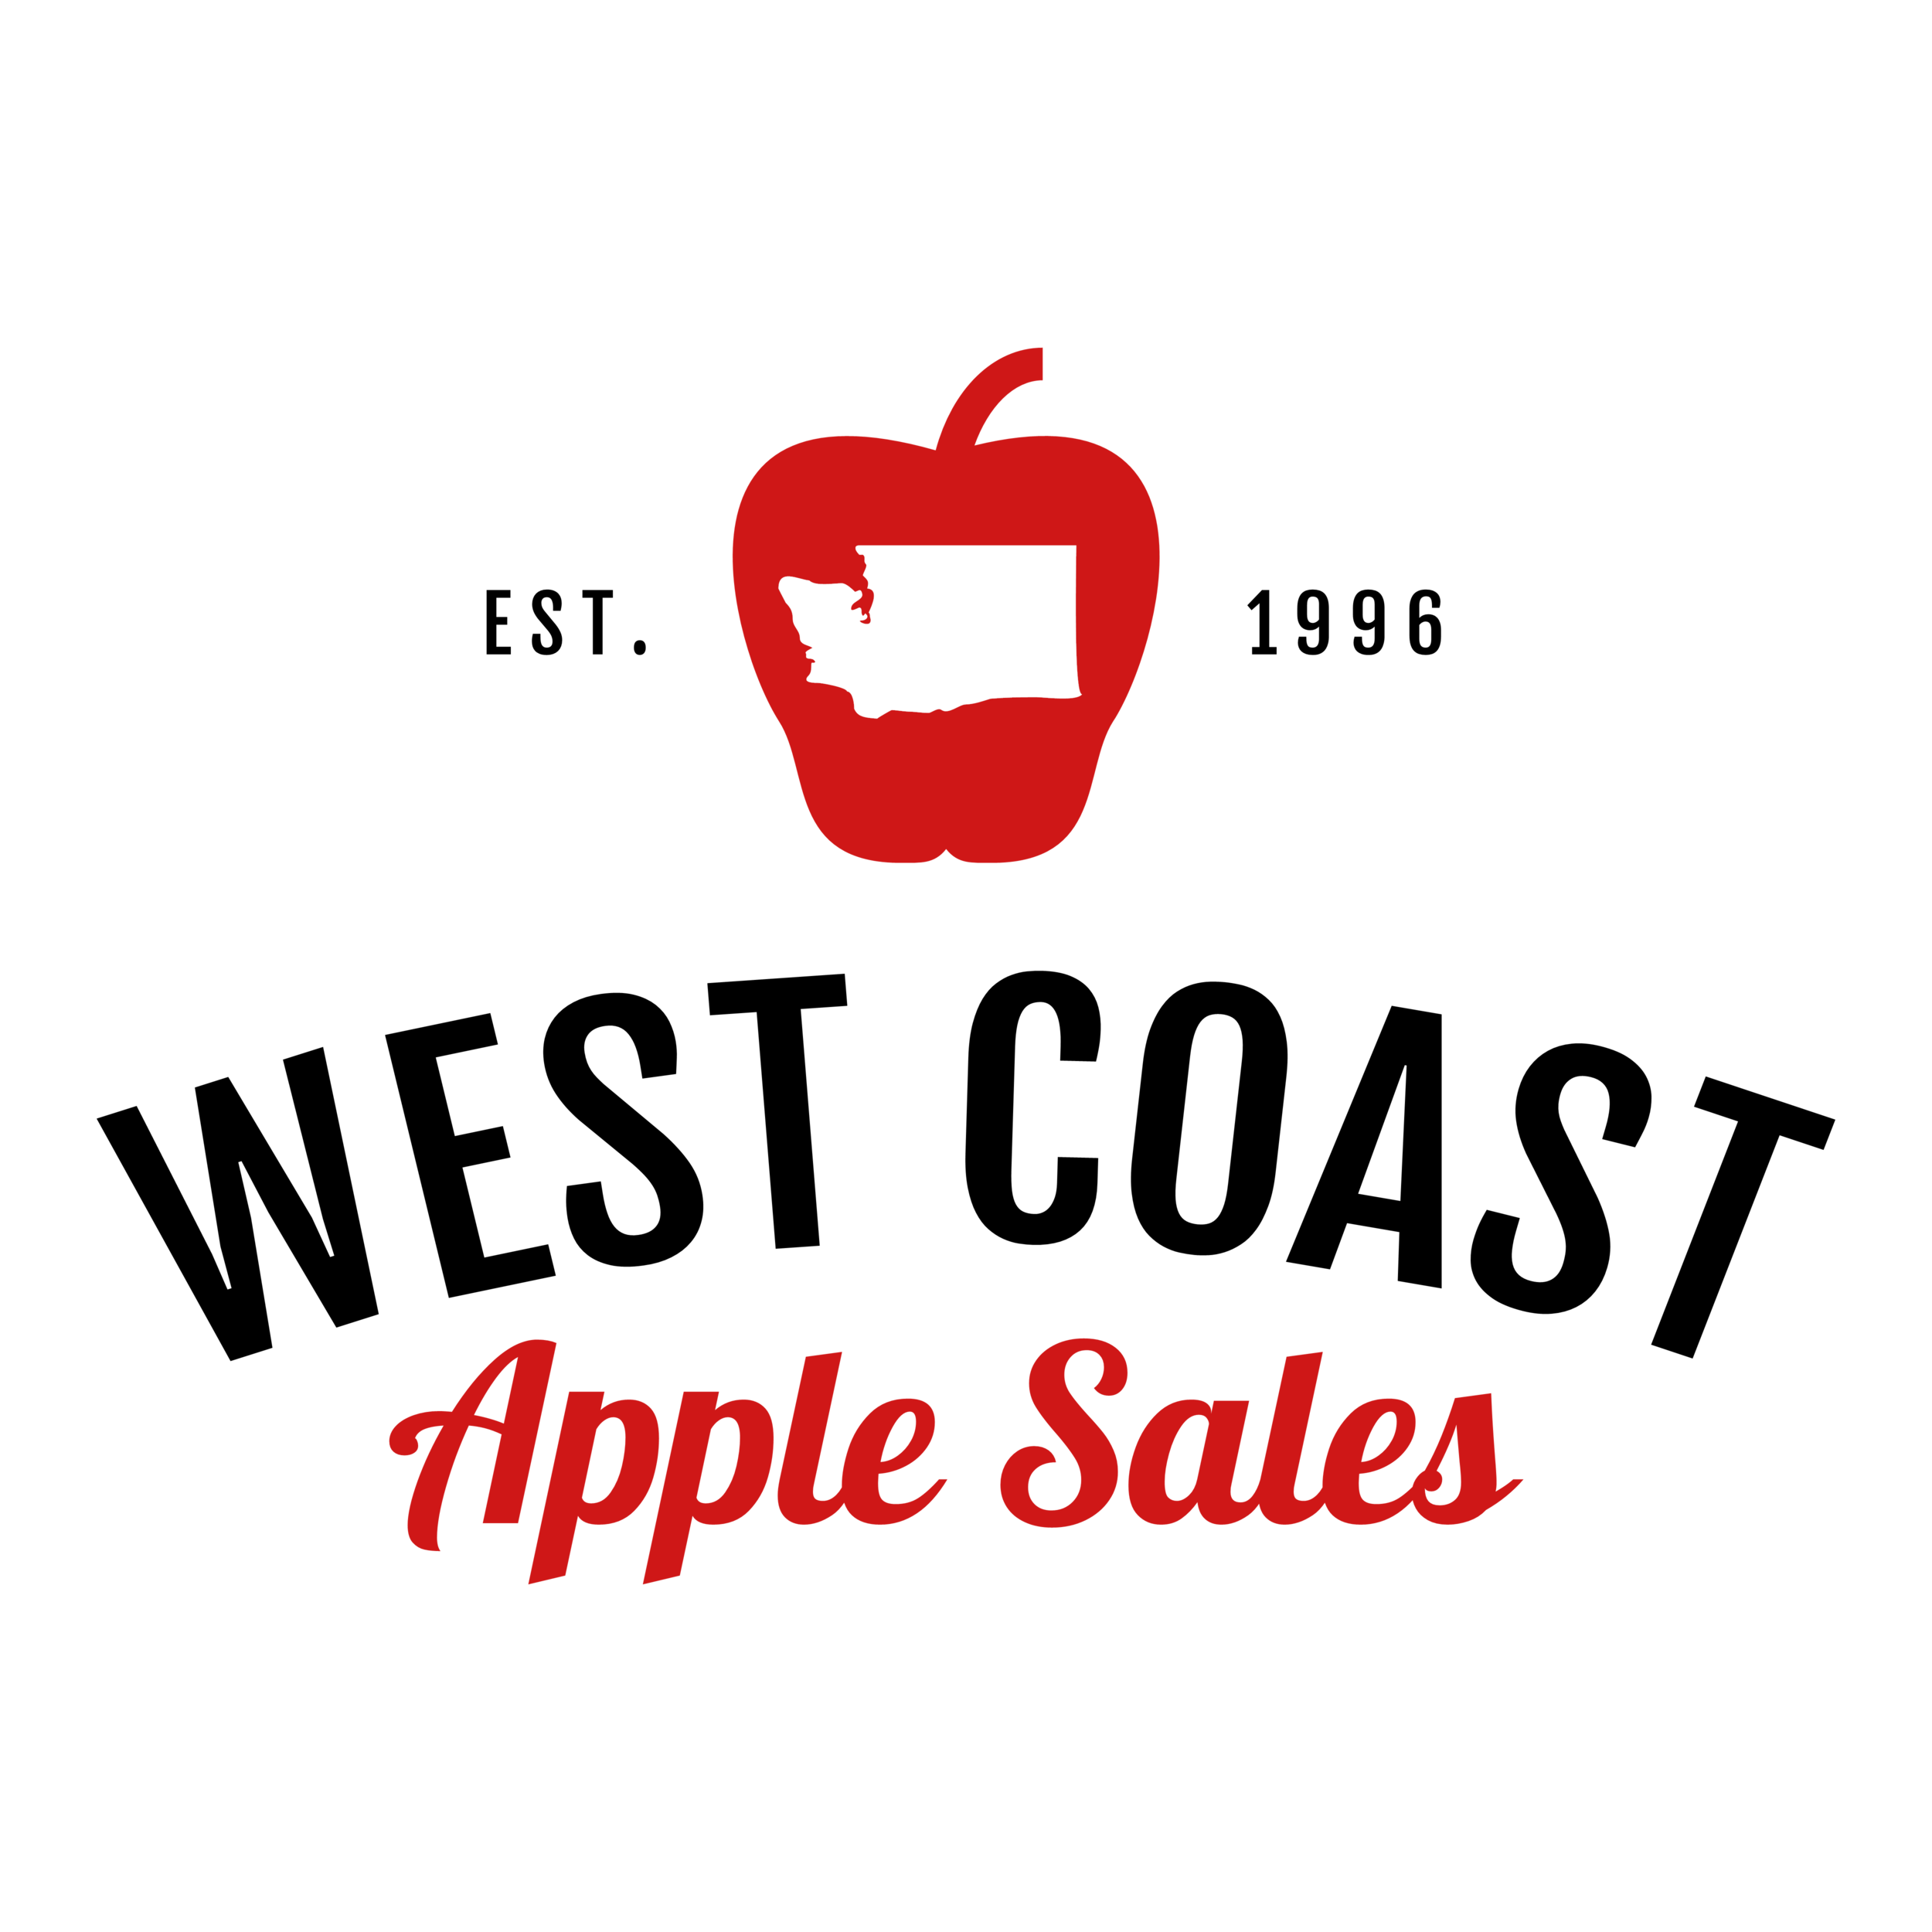 West Coast Apple Sales